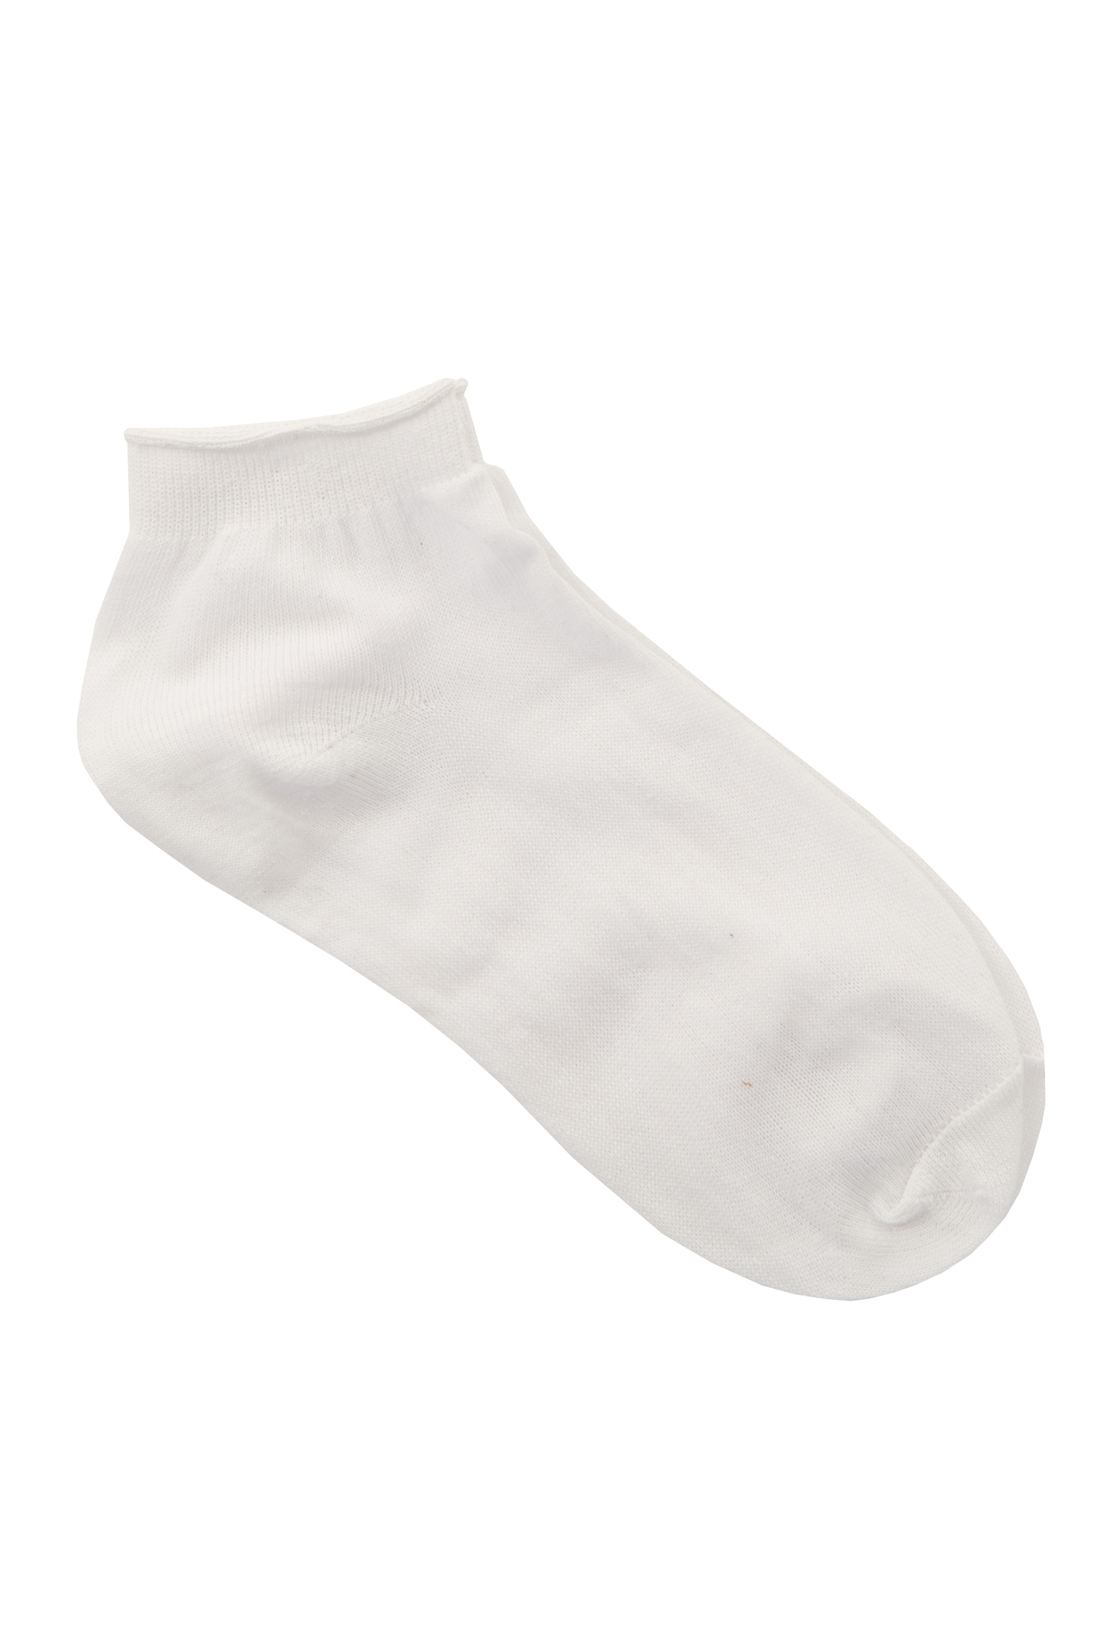 Укороченные хлопковые носки (арт. baon B398026), размер 38/40, цвет белый